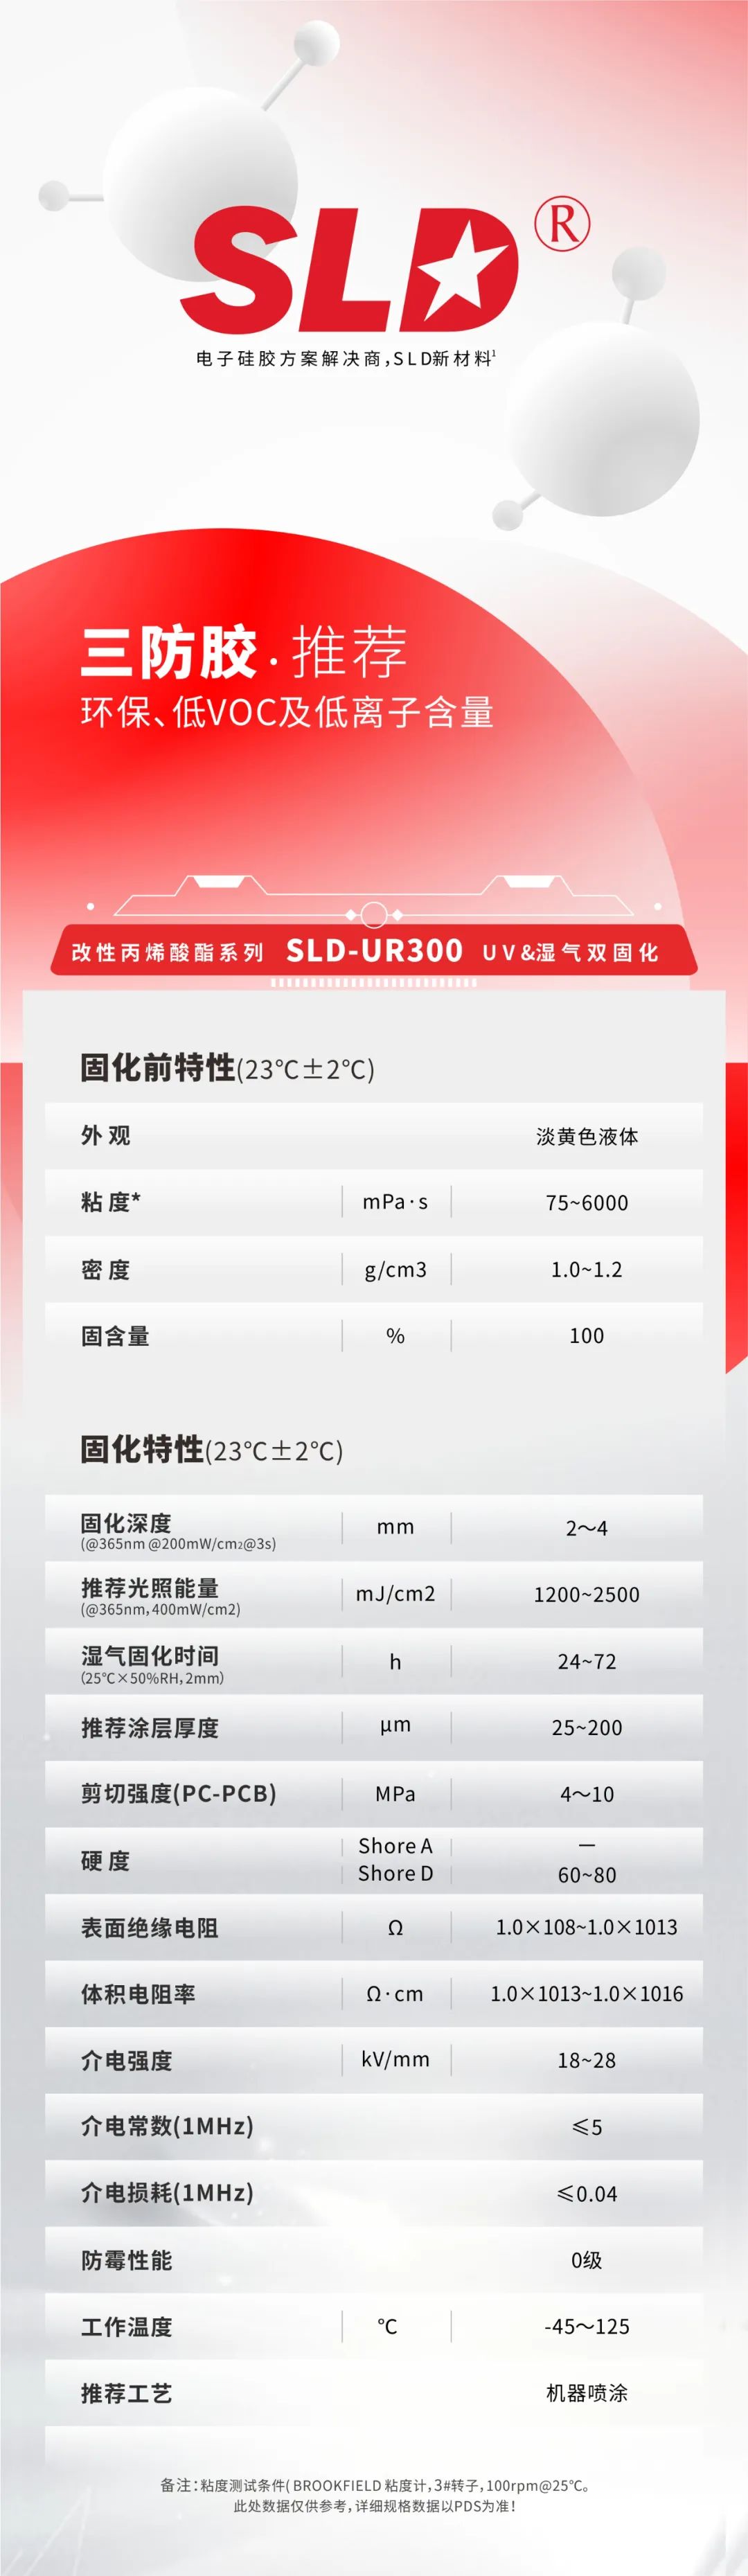 三防胶SLD-UR300系列的应用解决方案